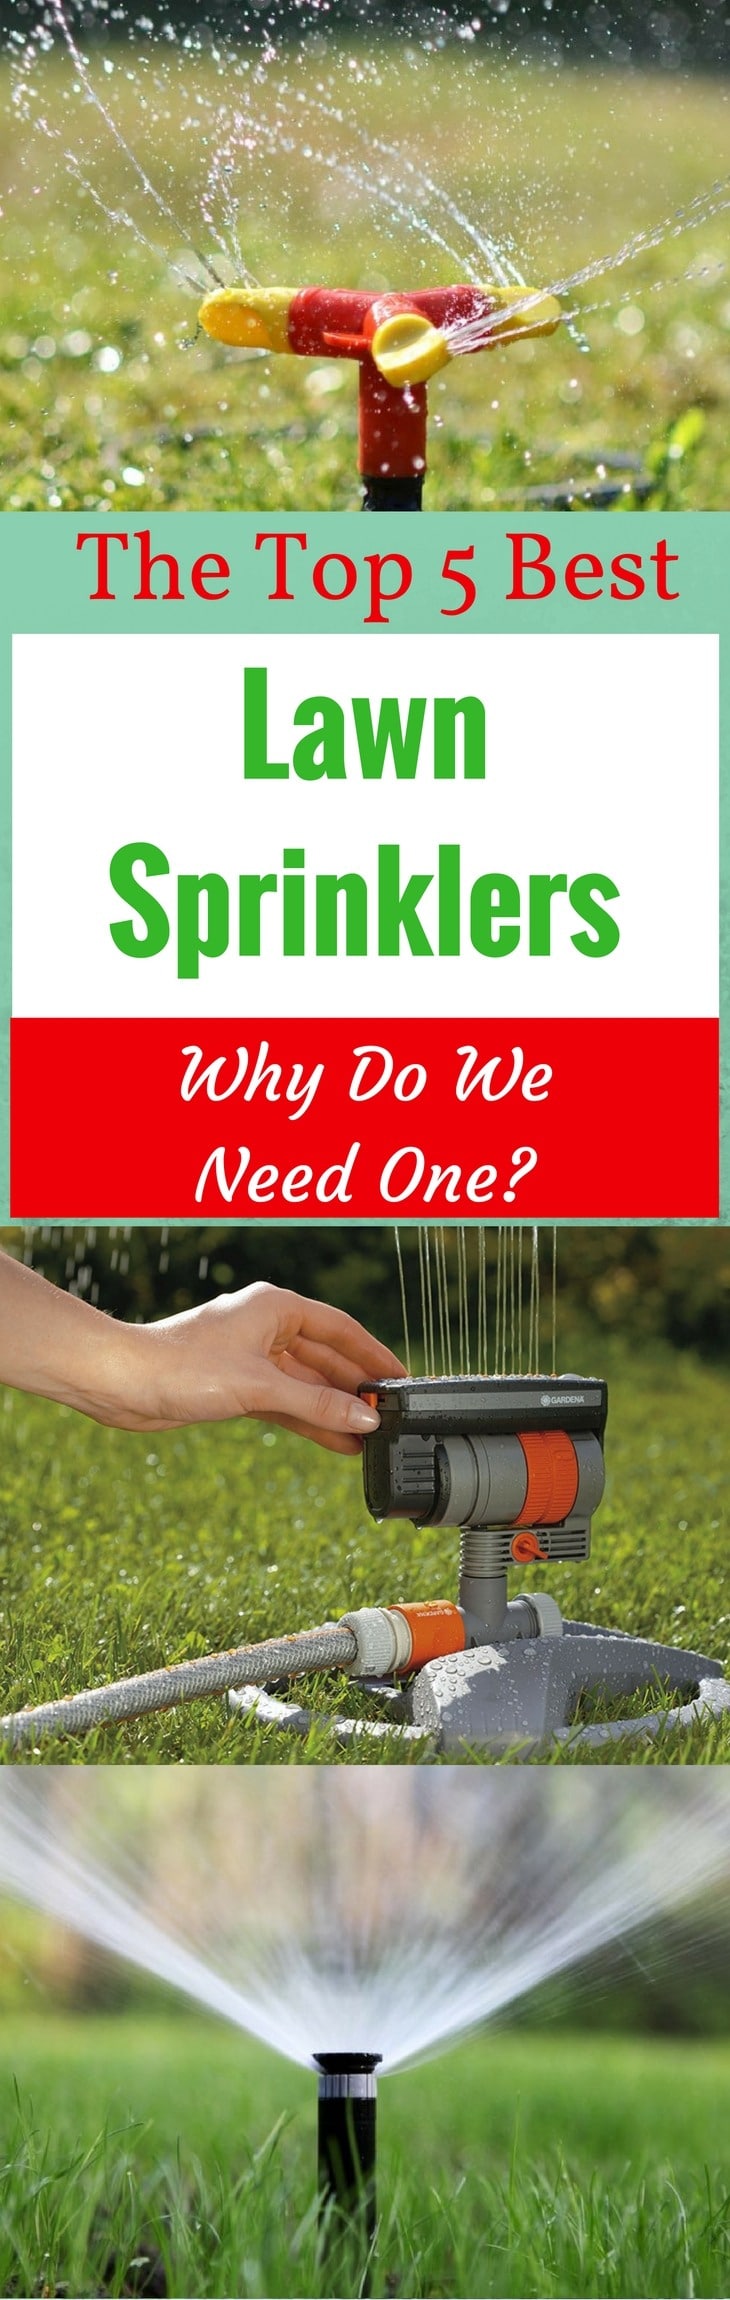 The Top 5 Best Lawn Sprinklers